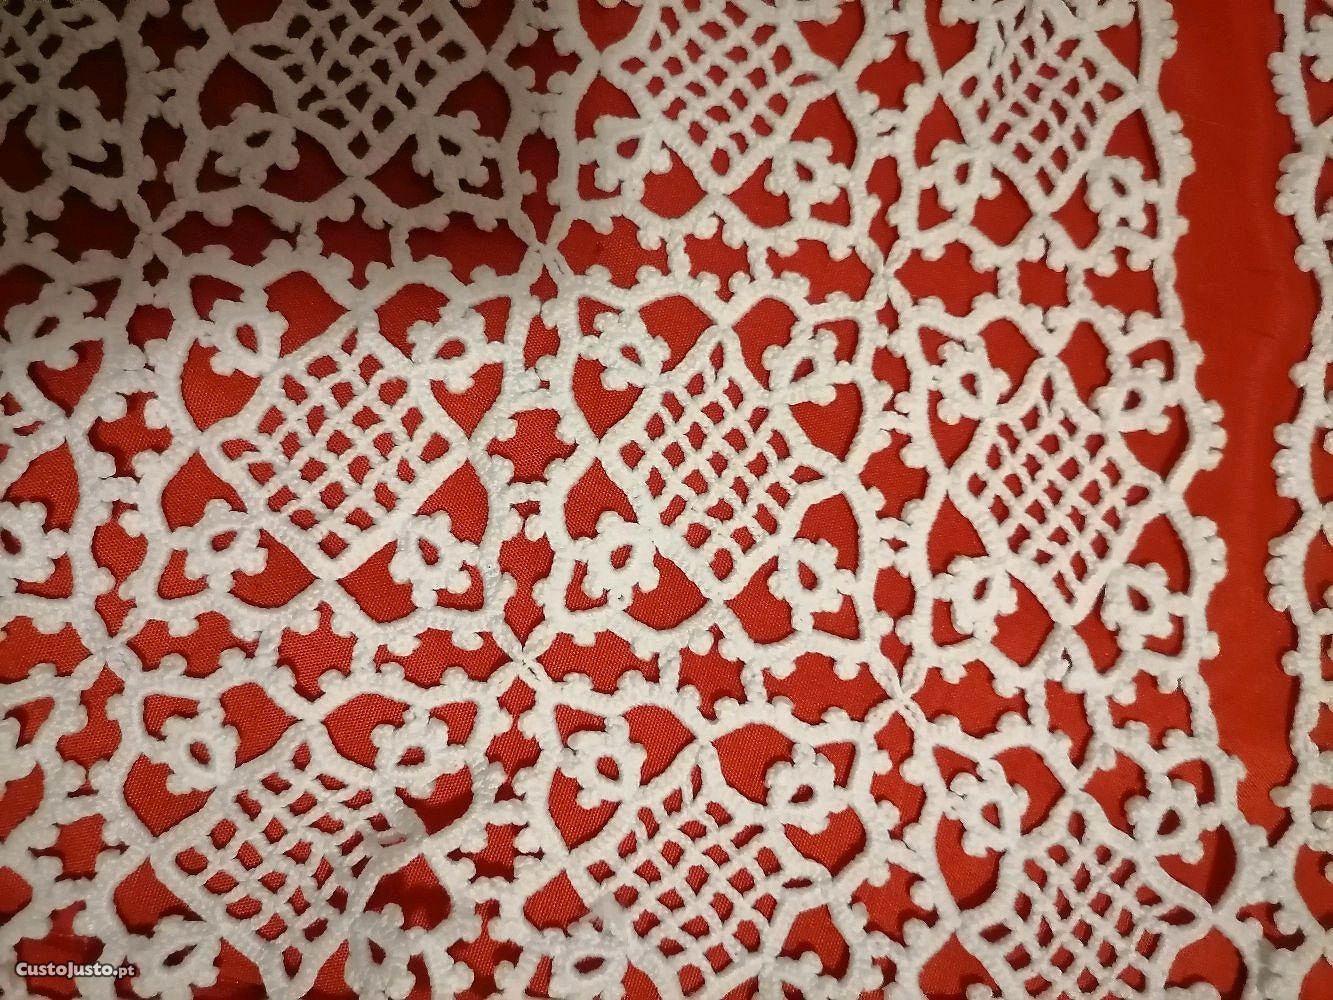 4 naperons em crochet 65x20 (1),25x25 (2) 30x30(1)